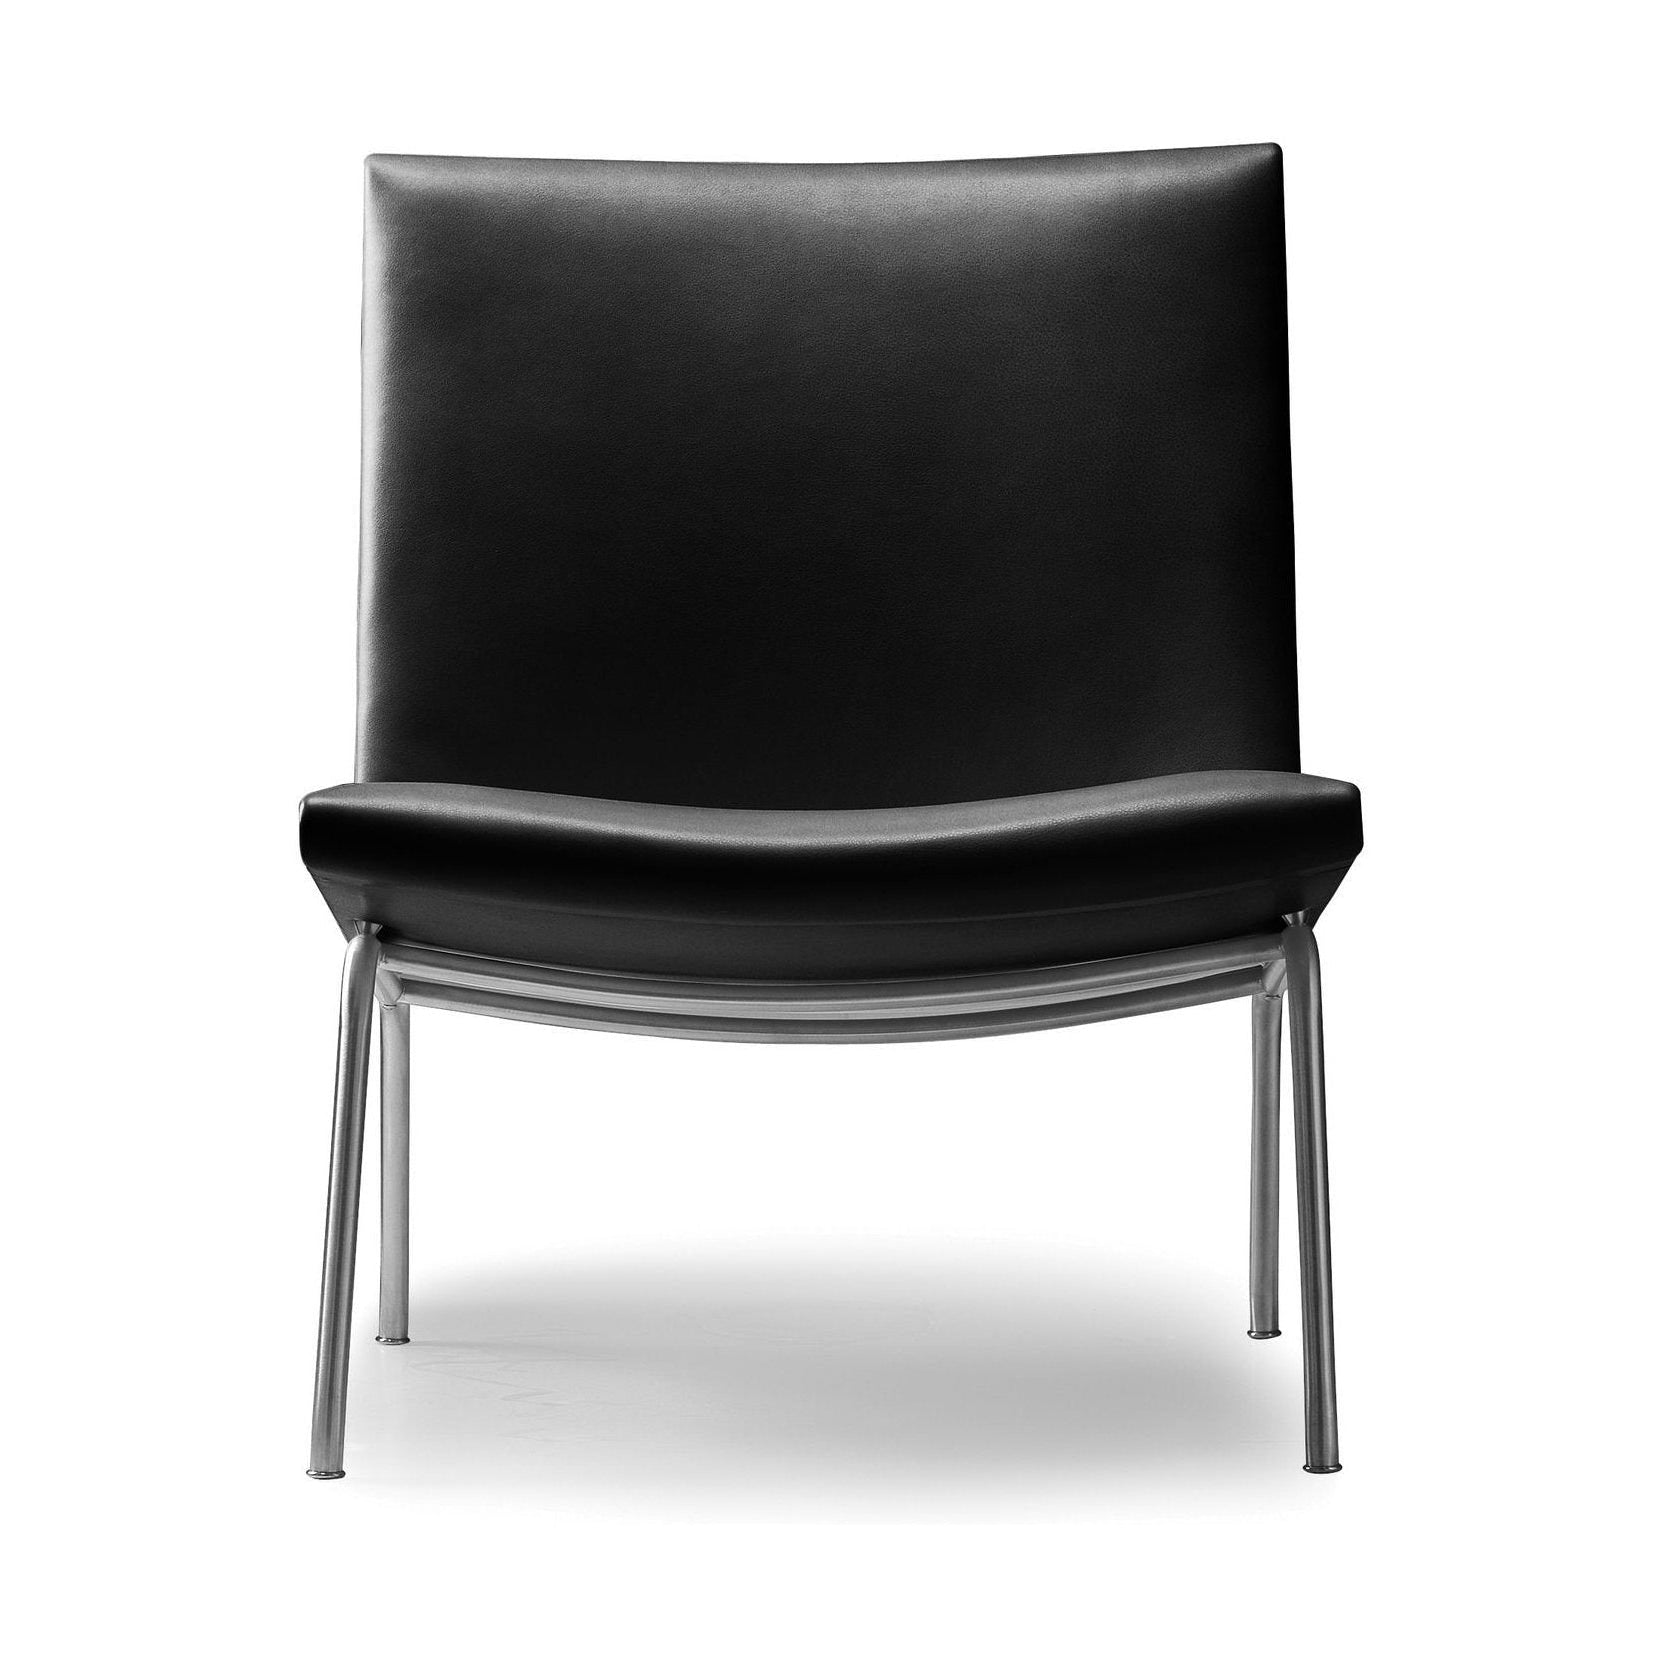 Carl Hansen Lustavns stol rostfritt stål 1-person, svart läder